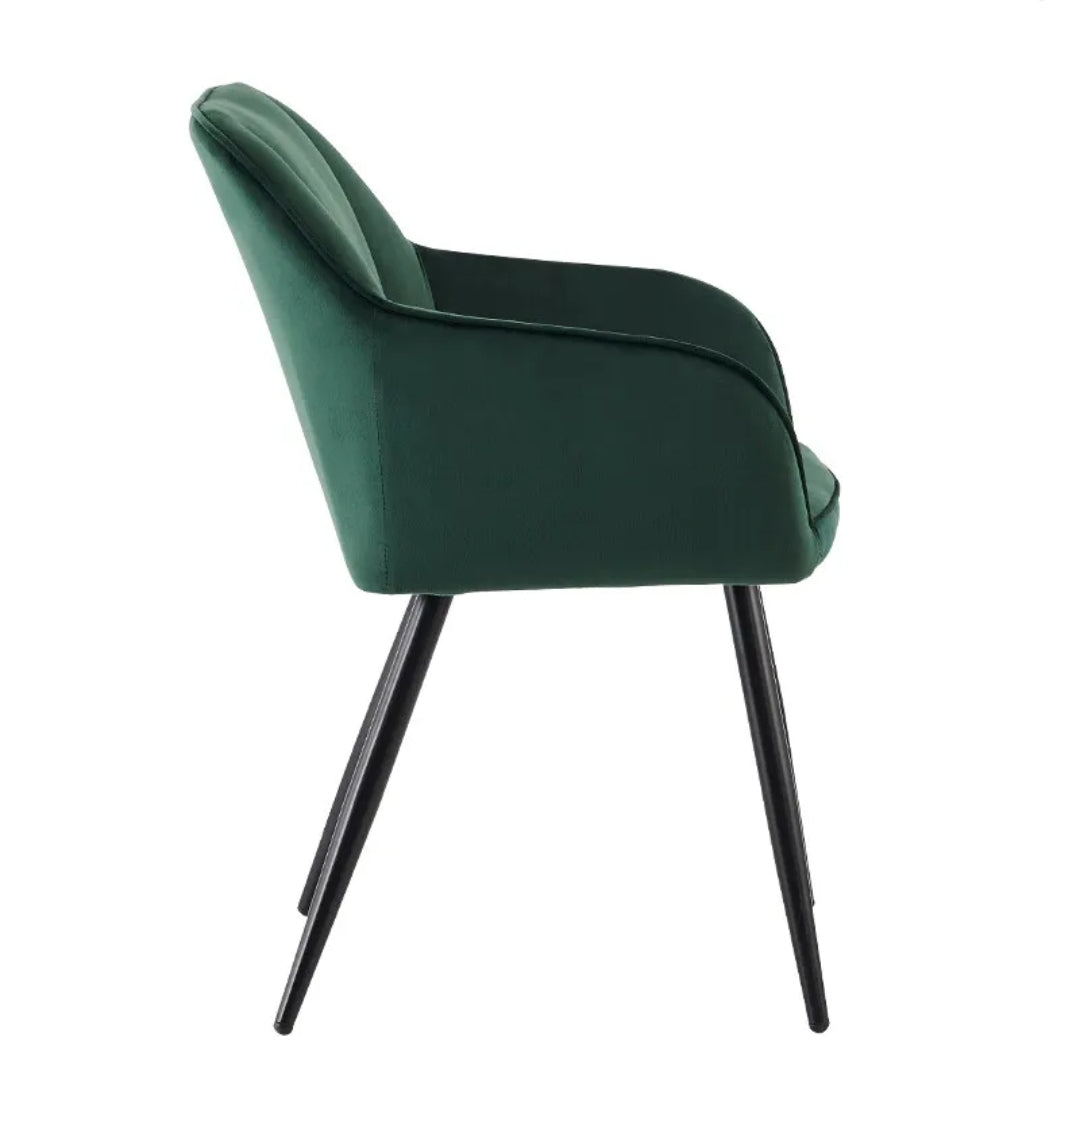 Green velvet chairs. Set of 2